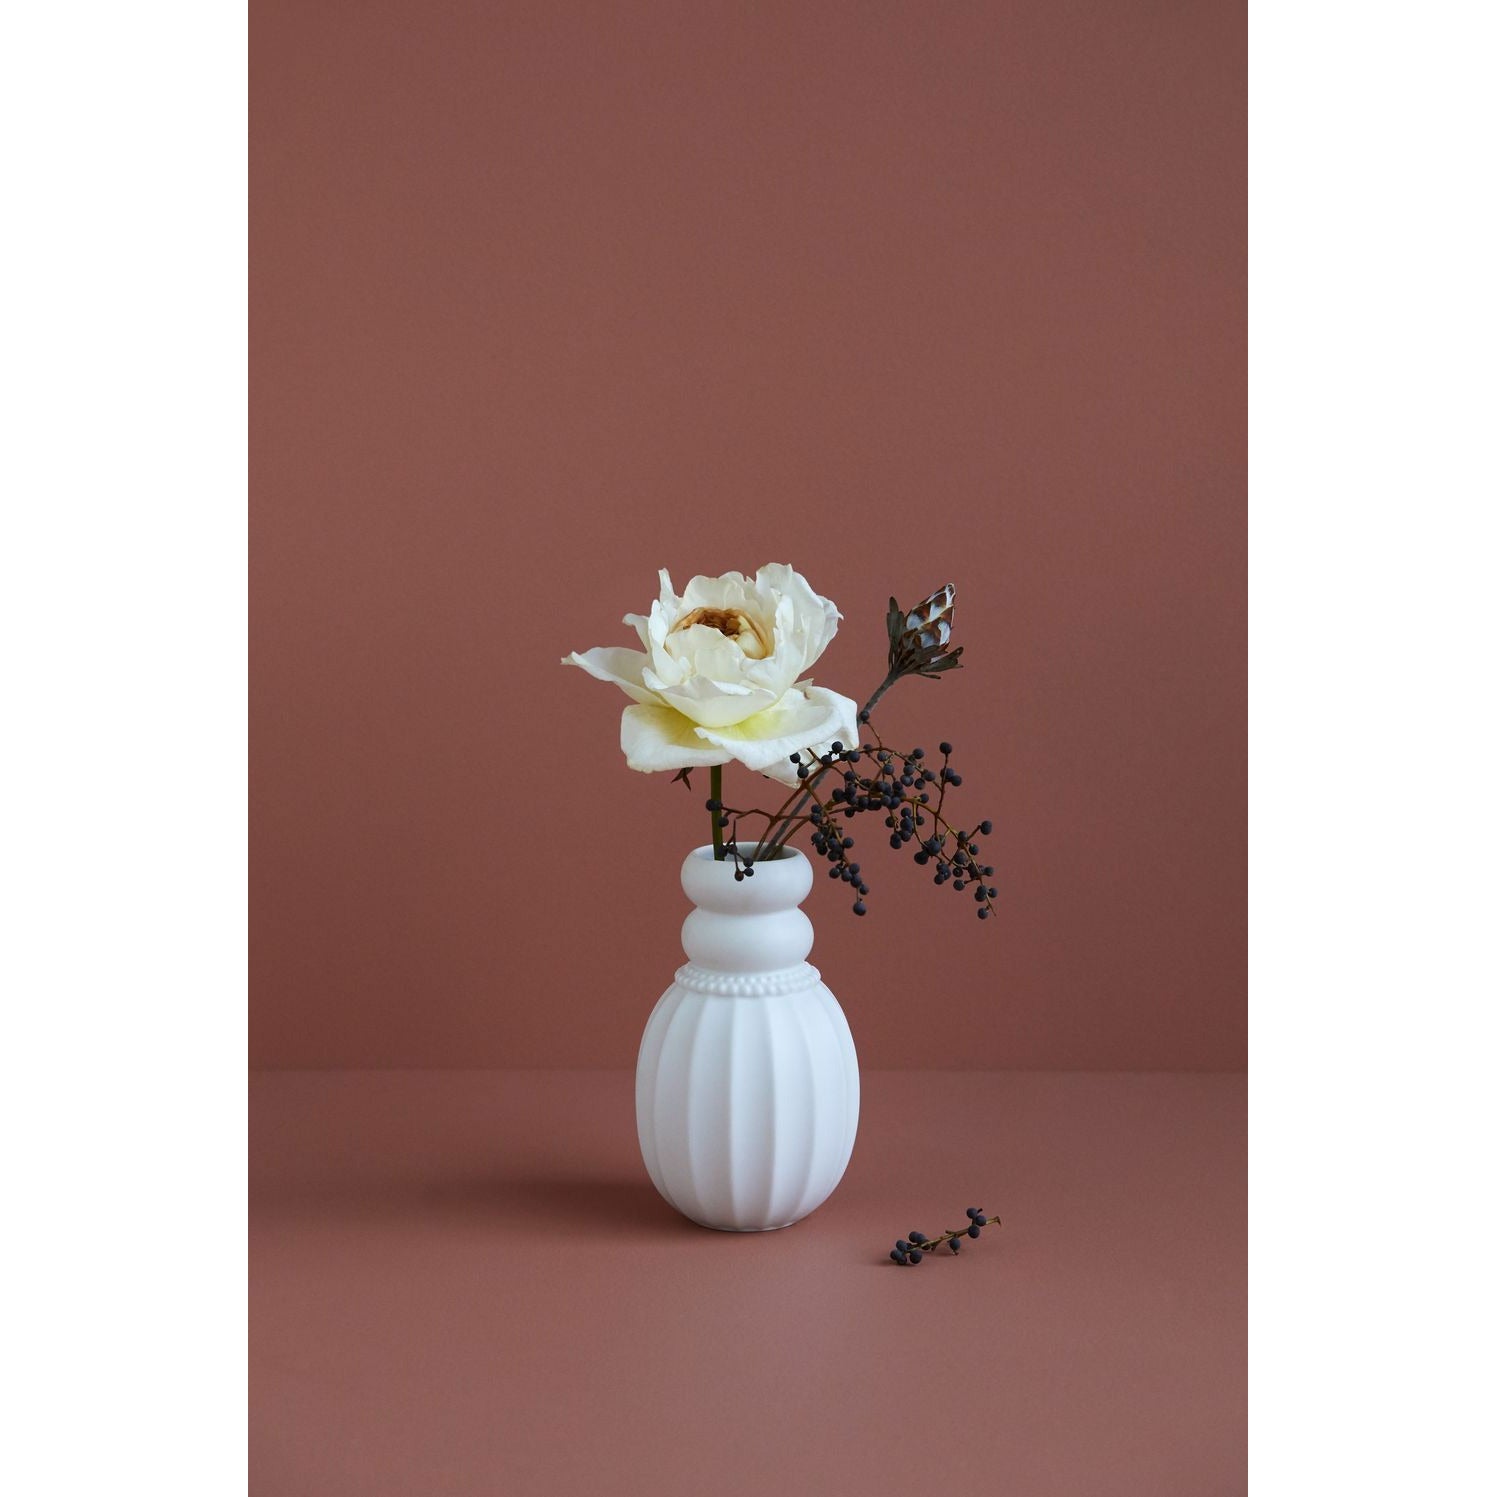 Dottir Pearlpuff Vase, White